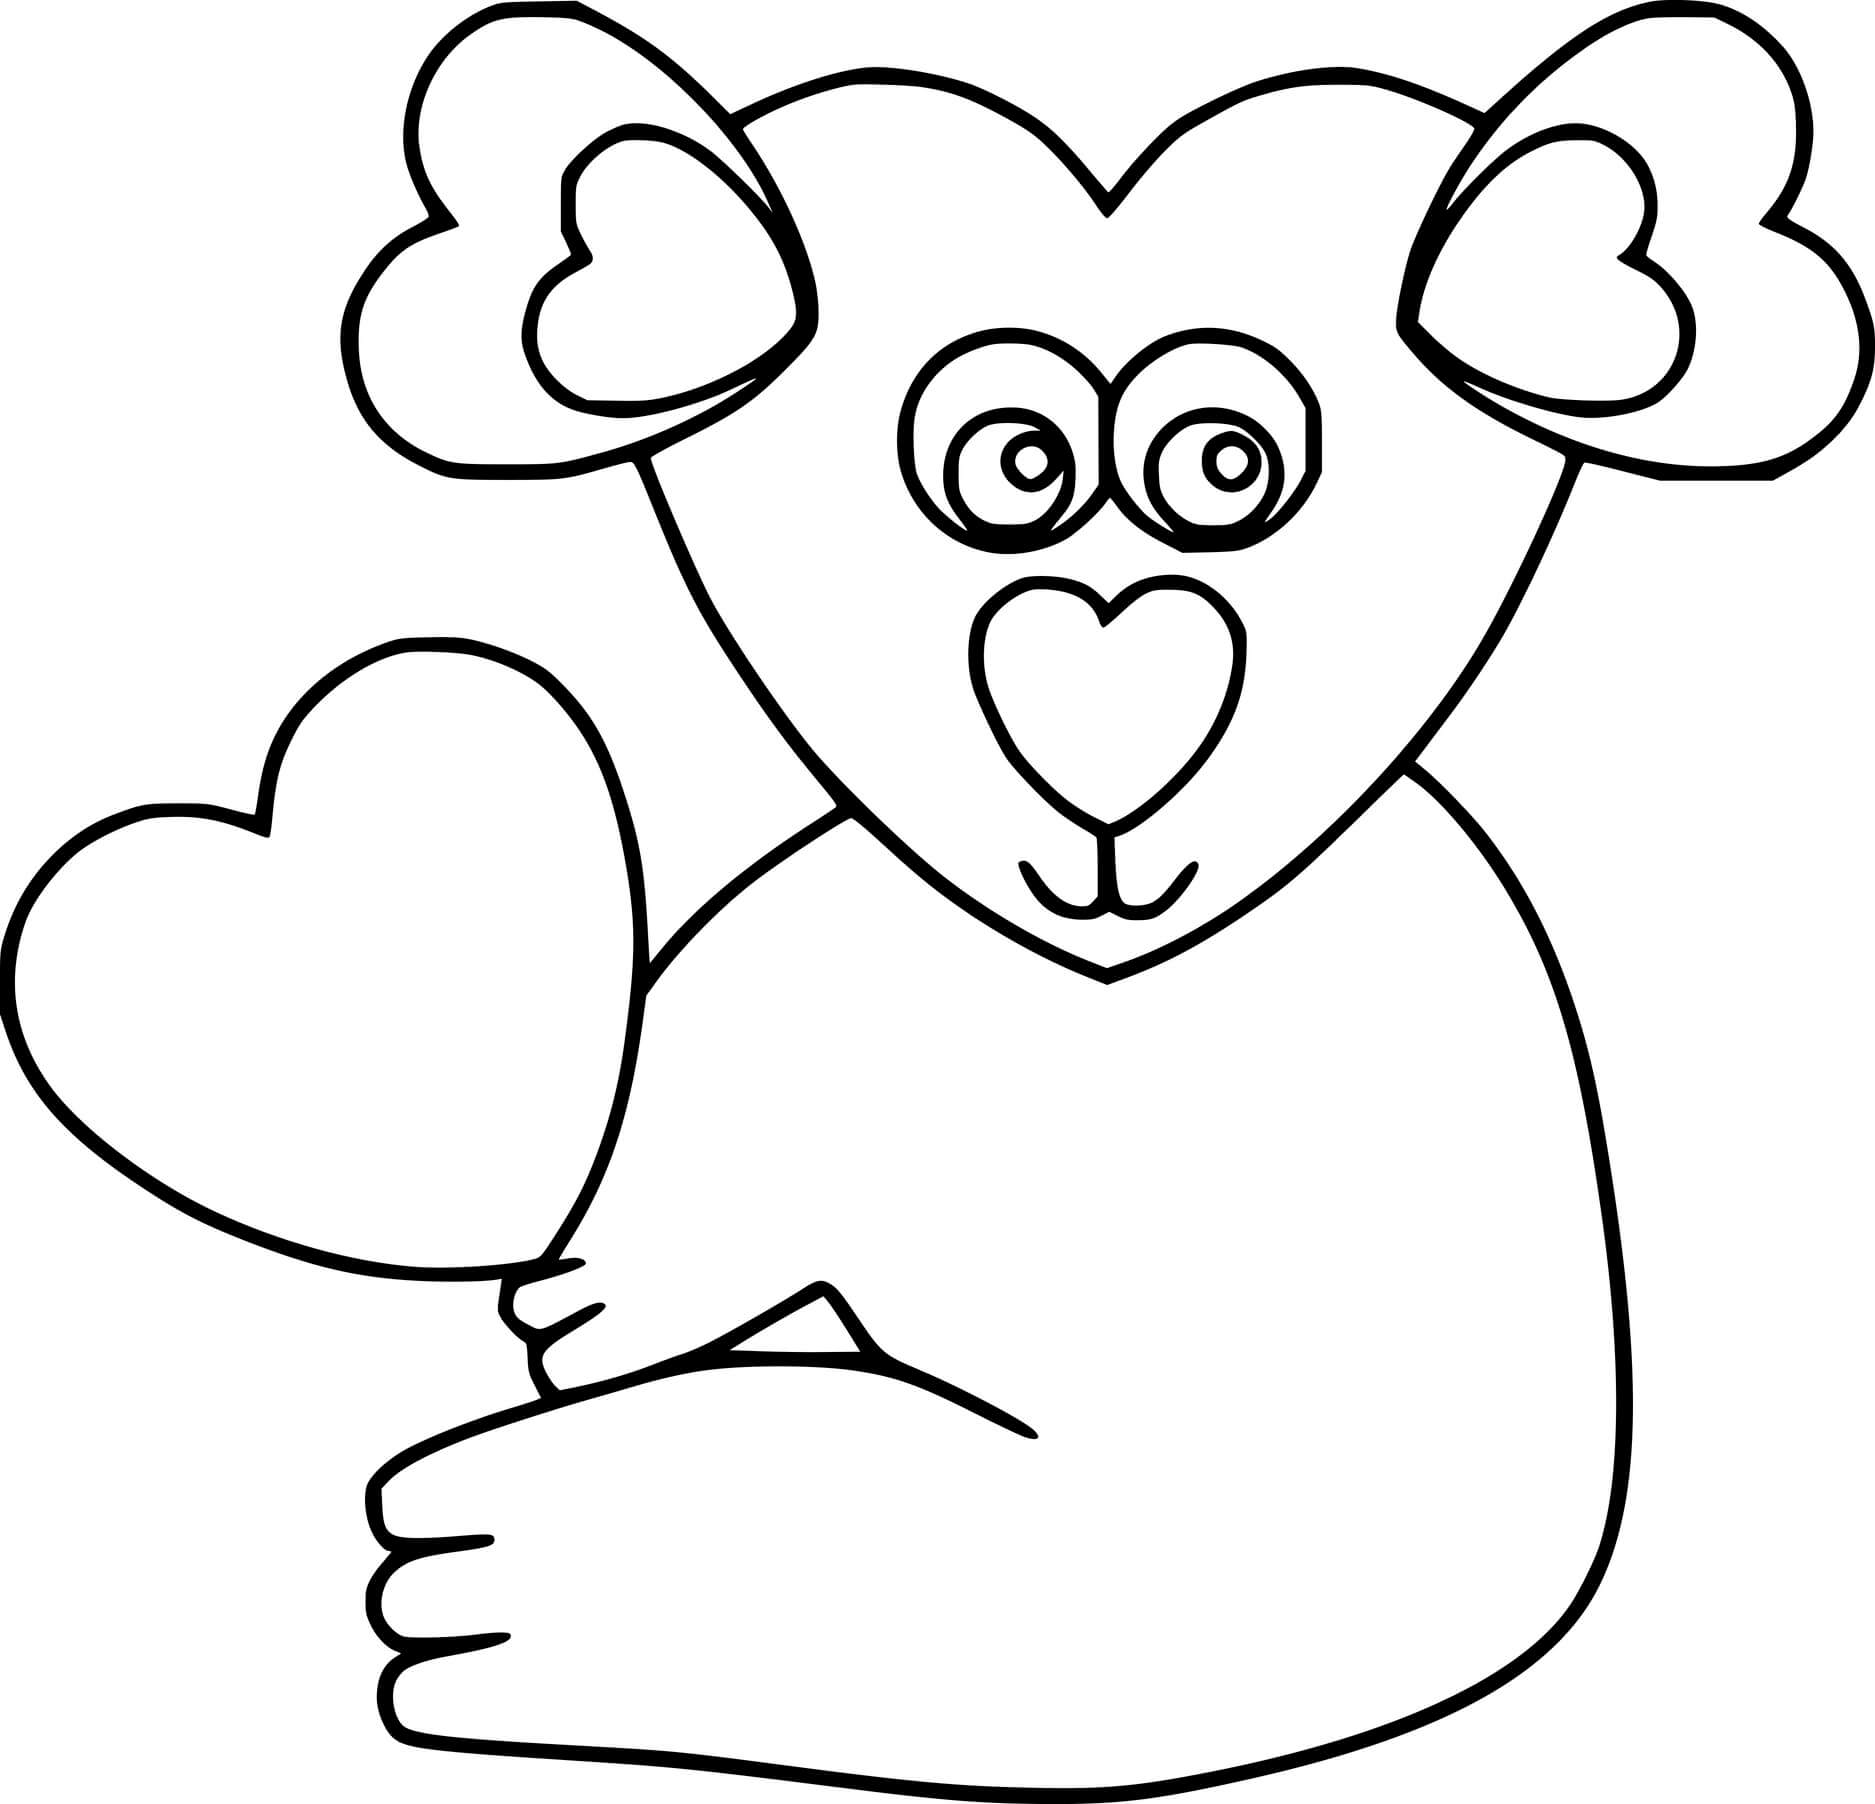 Heart Shaped Koala Coloring Page